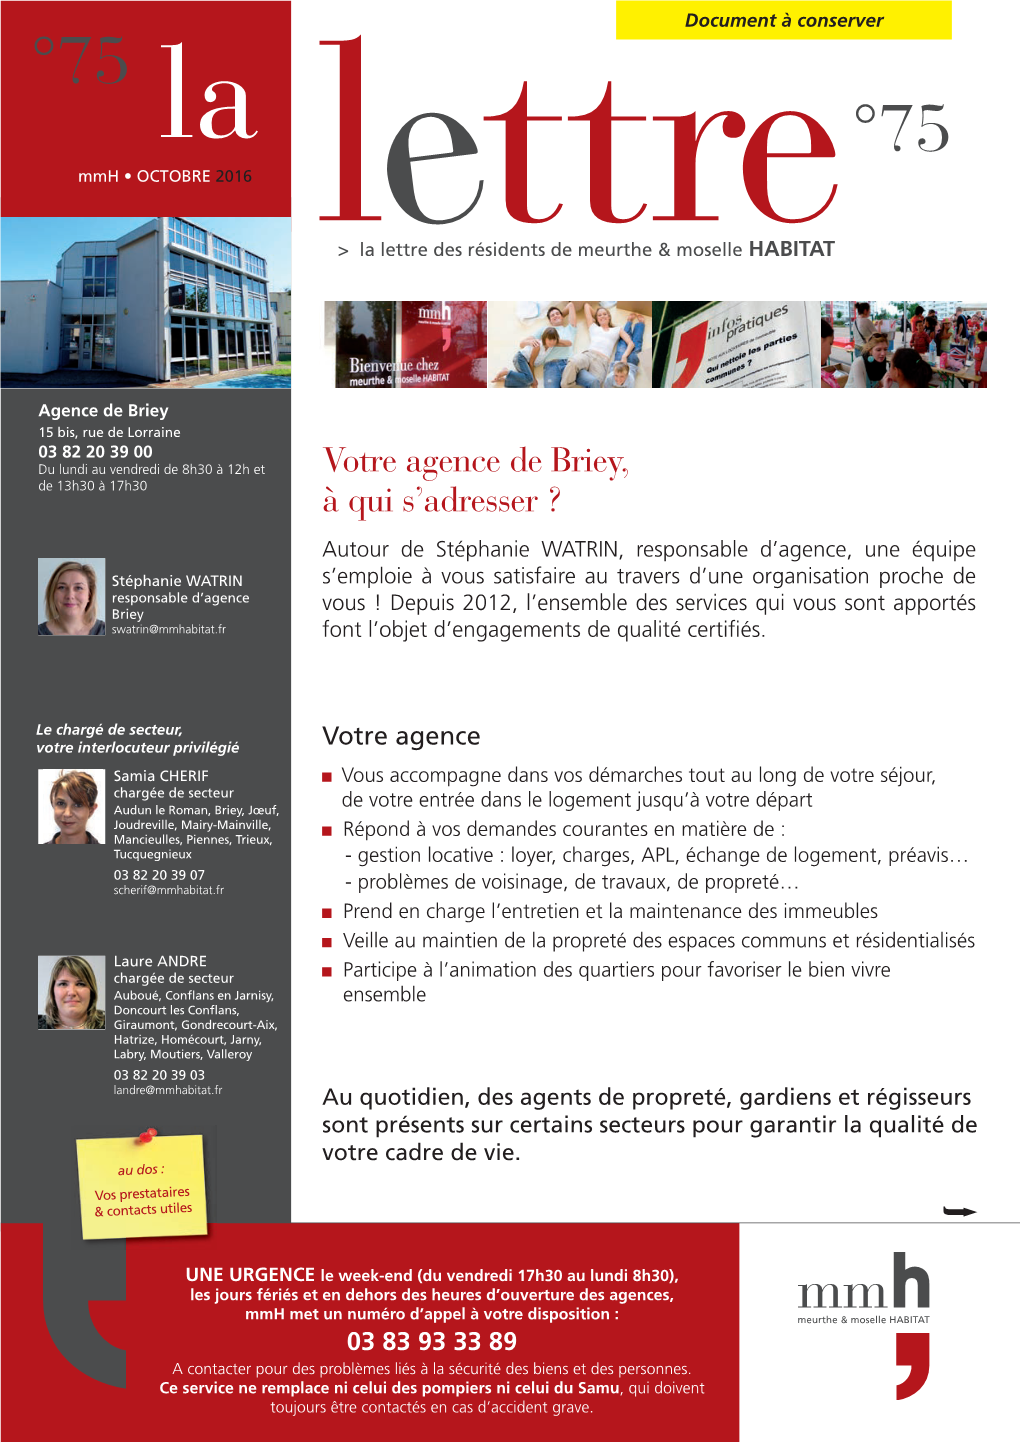 Agence De Briey, Contacts Et Services Utiles